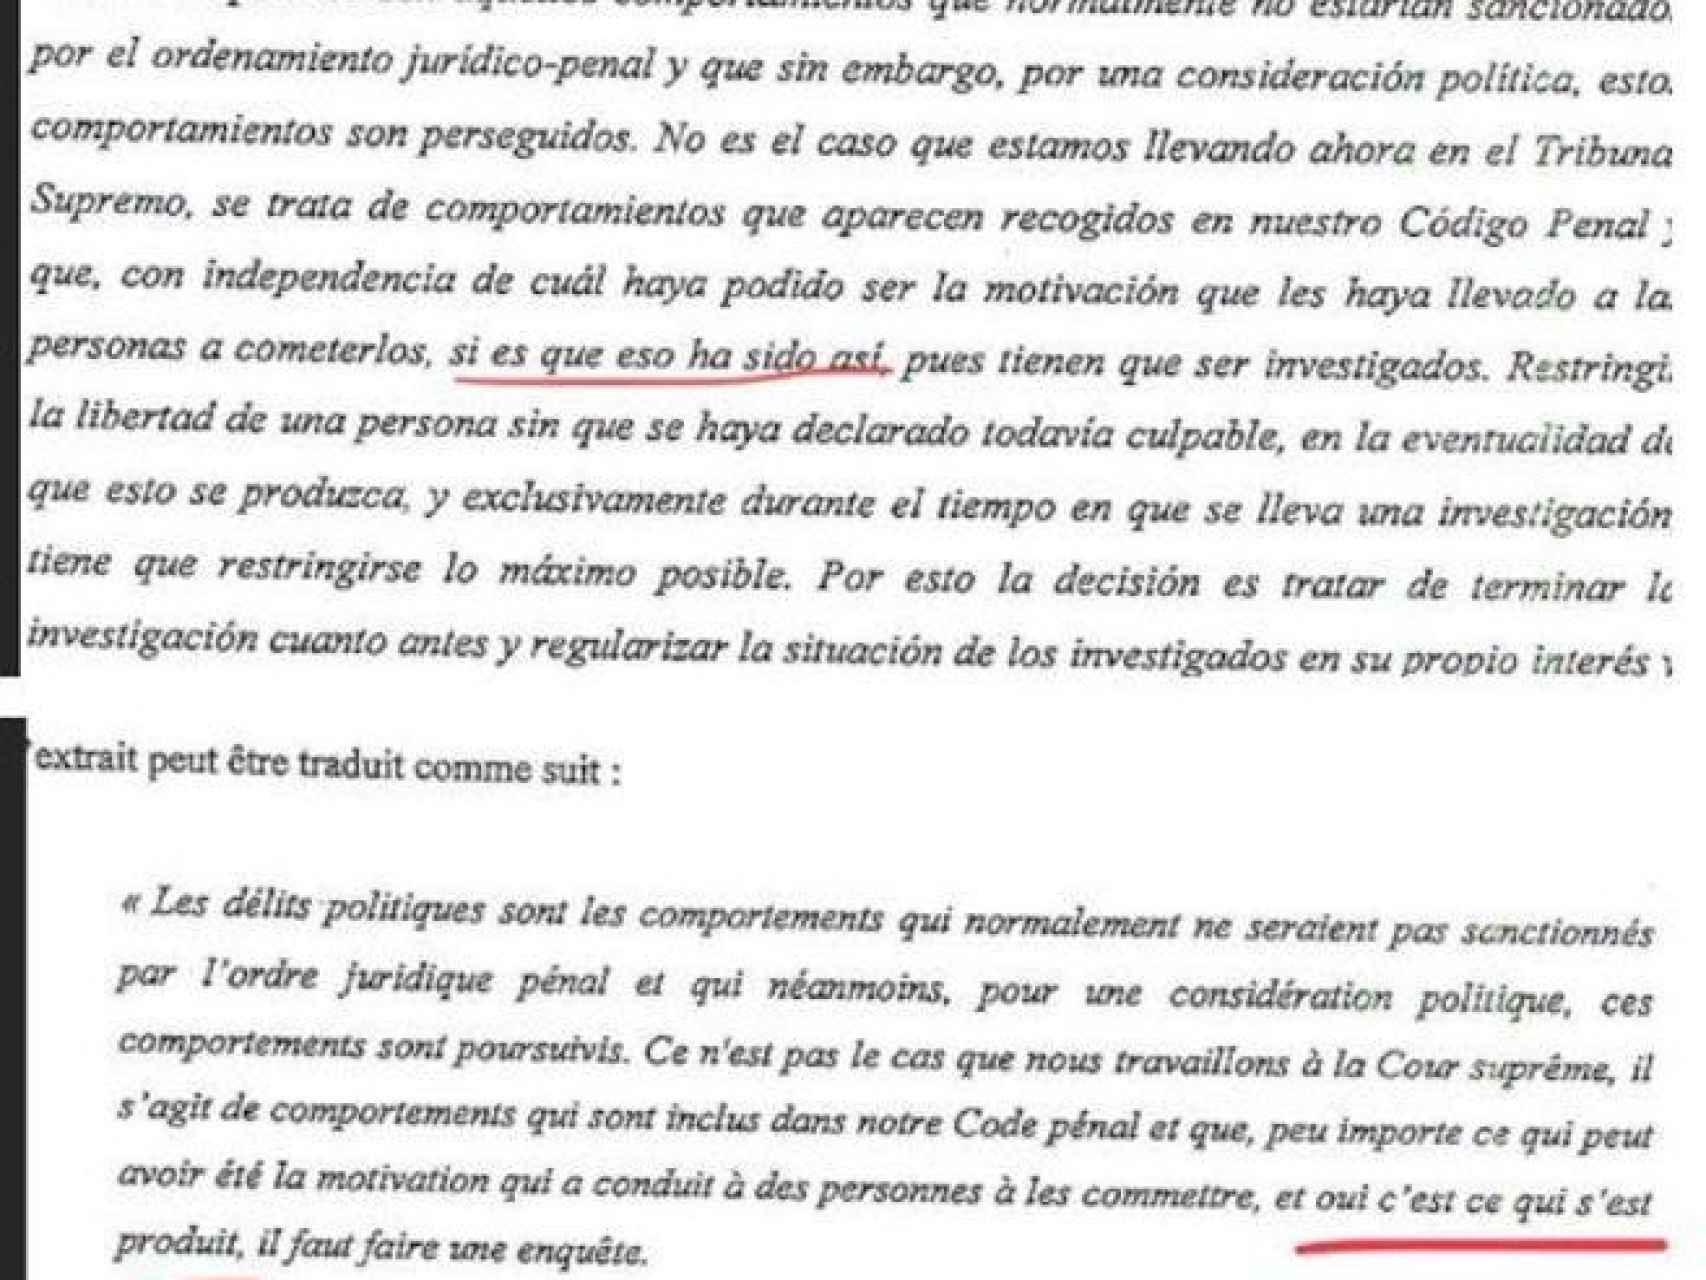 El texto de la demanda en español (arriba) y francés (abajo).